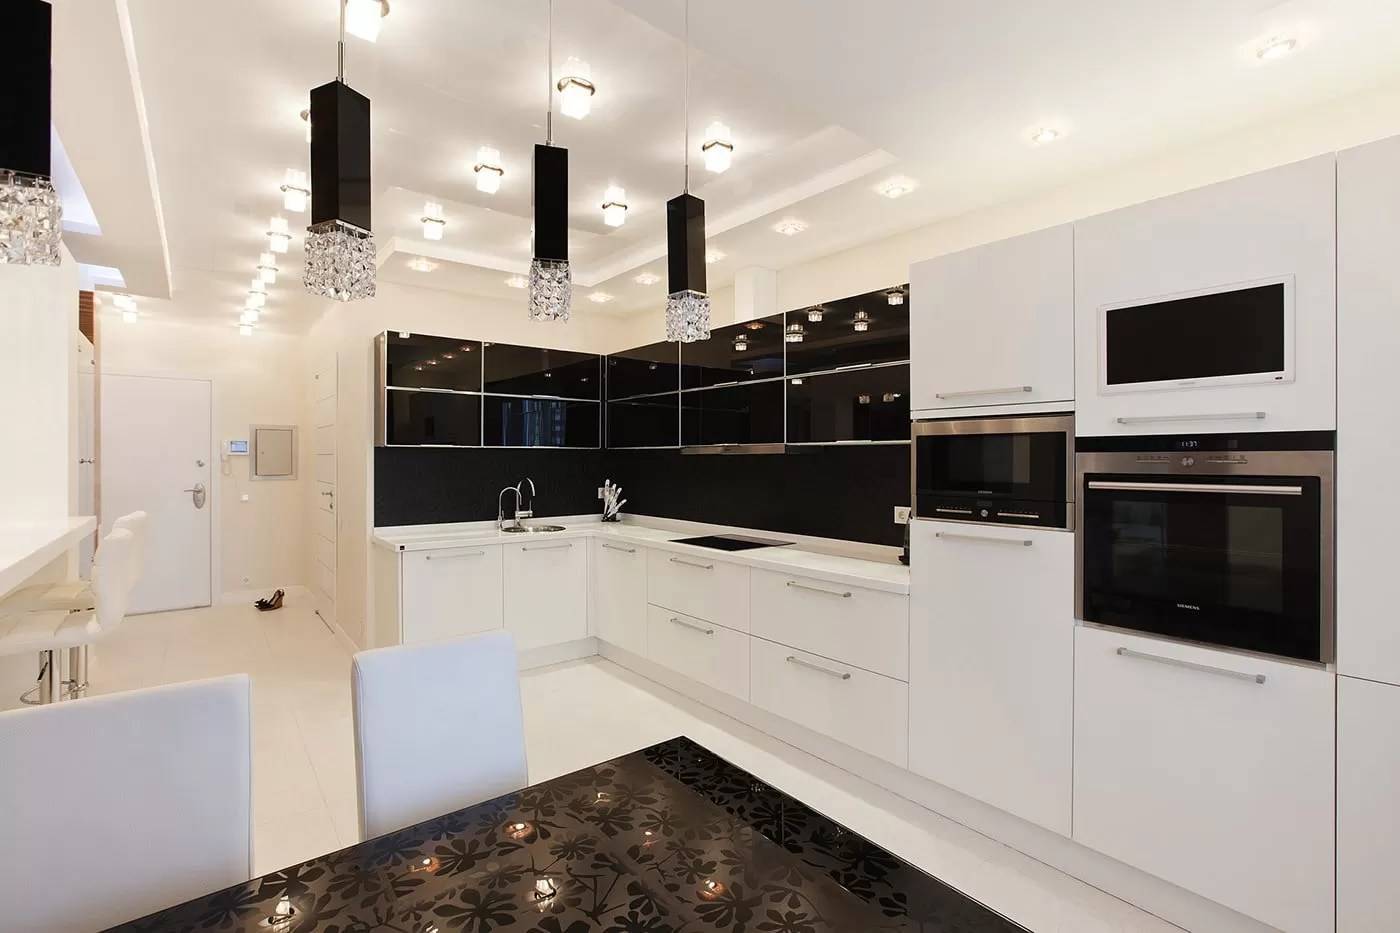 Дизайн белой кухни: фото реальных интерьеров кухонь в белых тонах